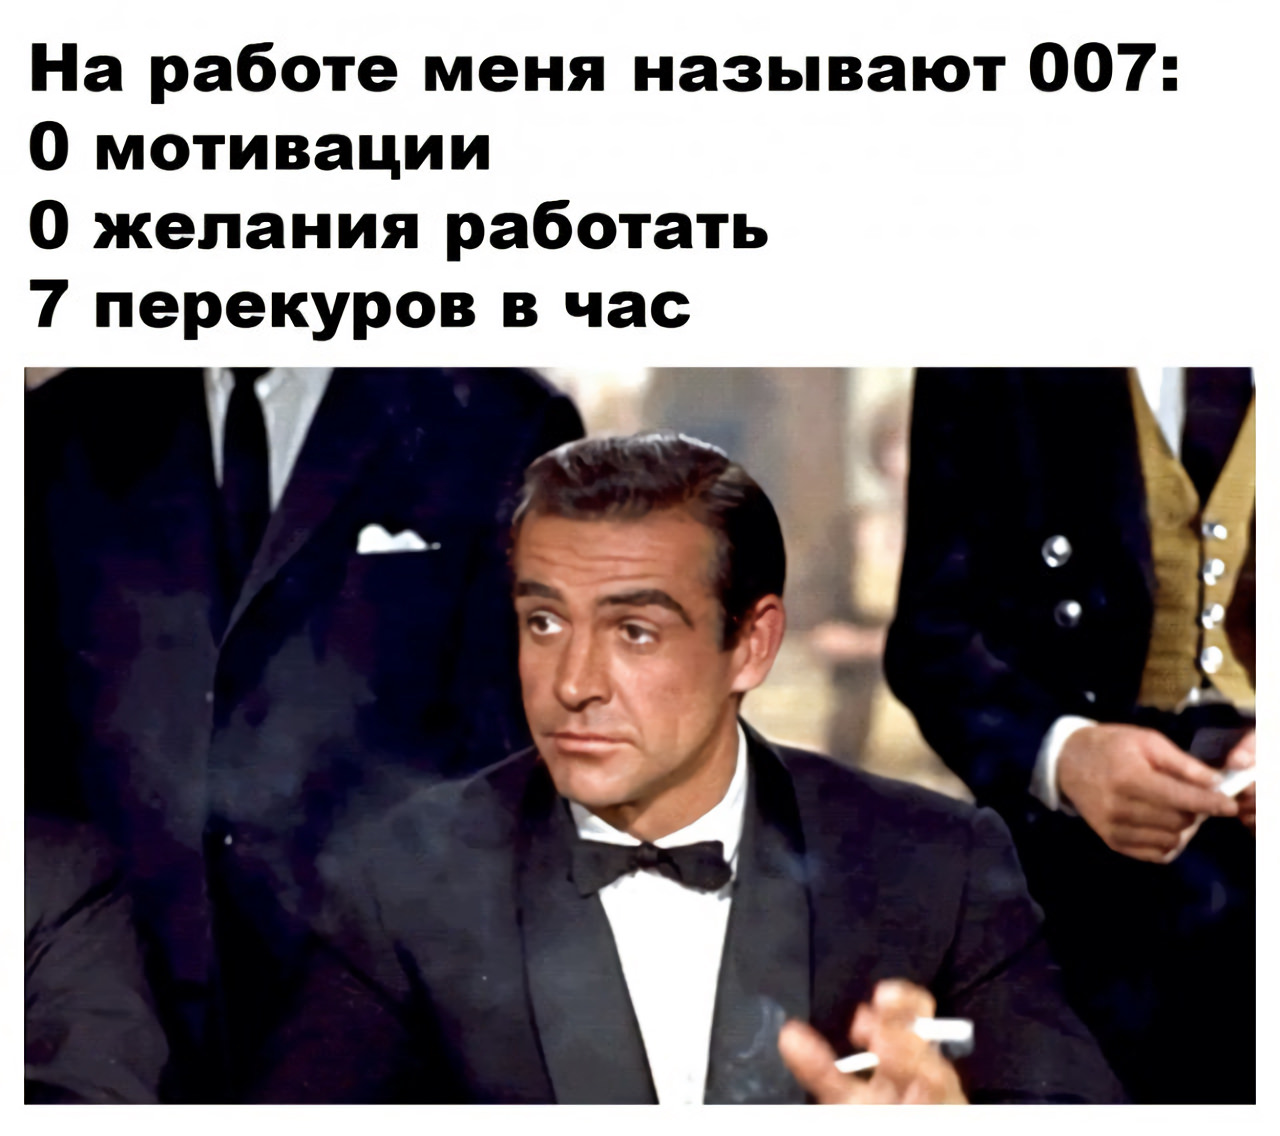 7 meme. На работе меня называют агентом 007. Агент 007 на работе Мем. Агент 007 мемы. Меня зовут 007.